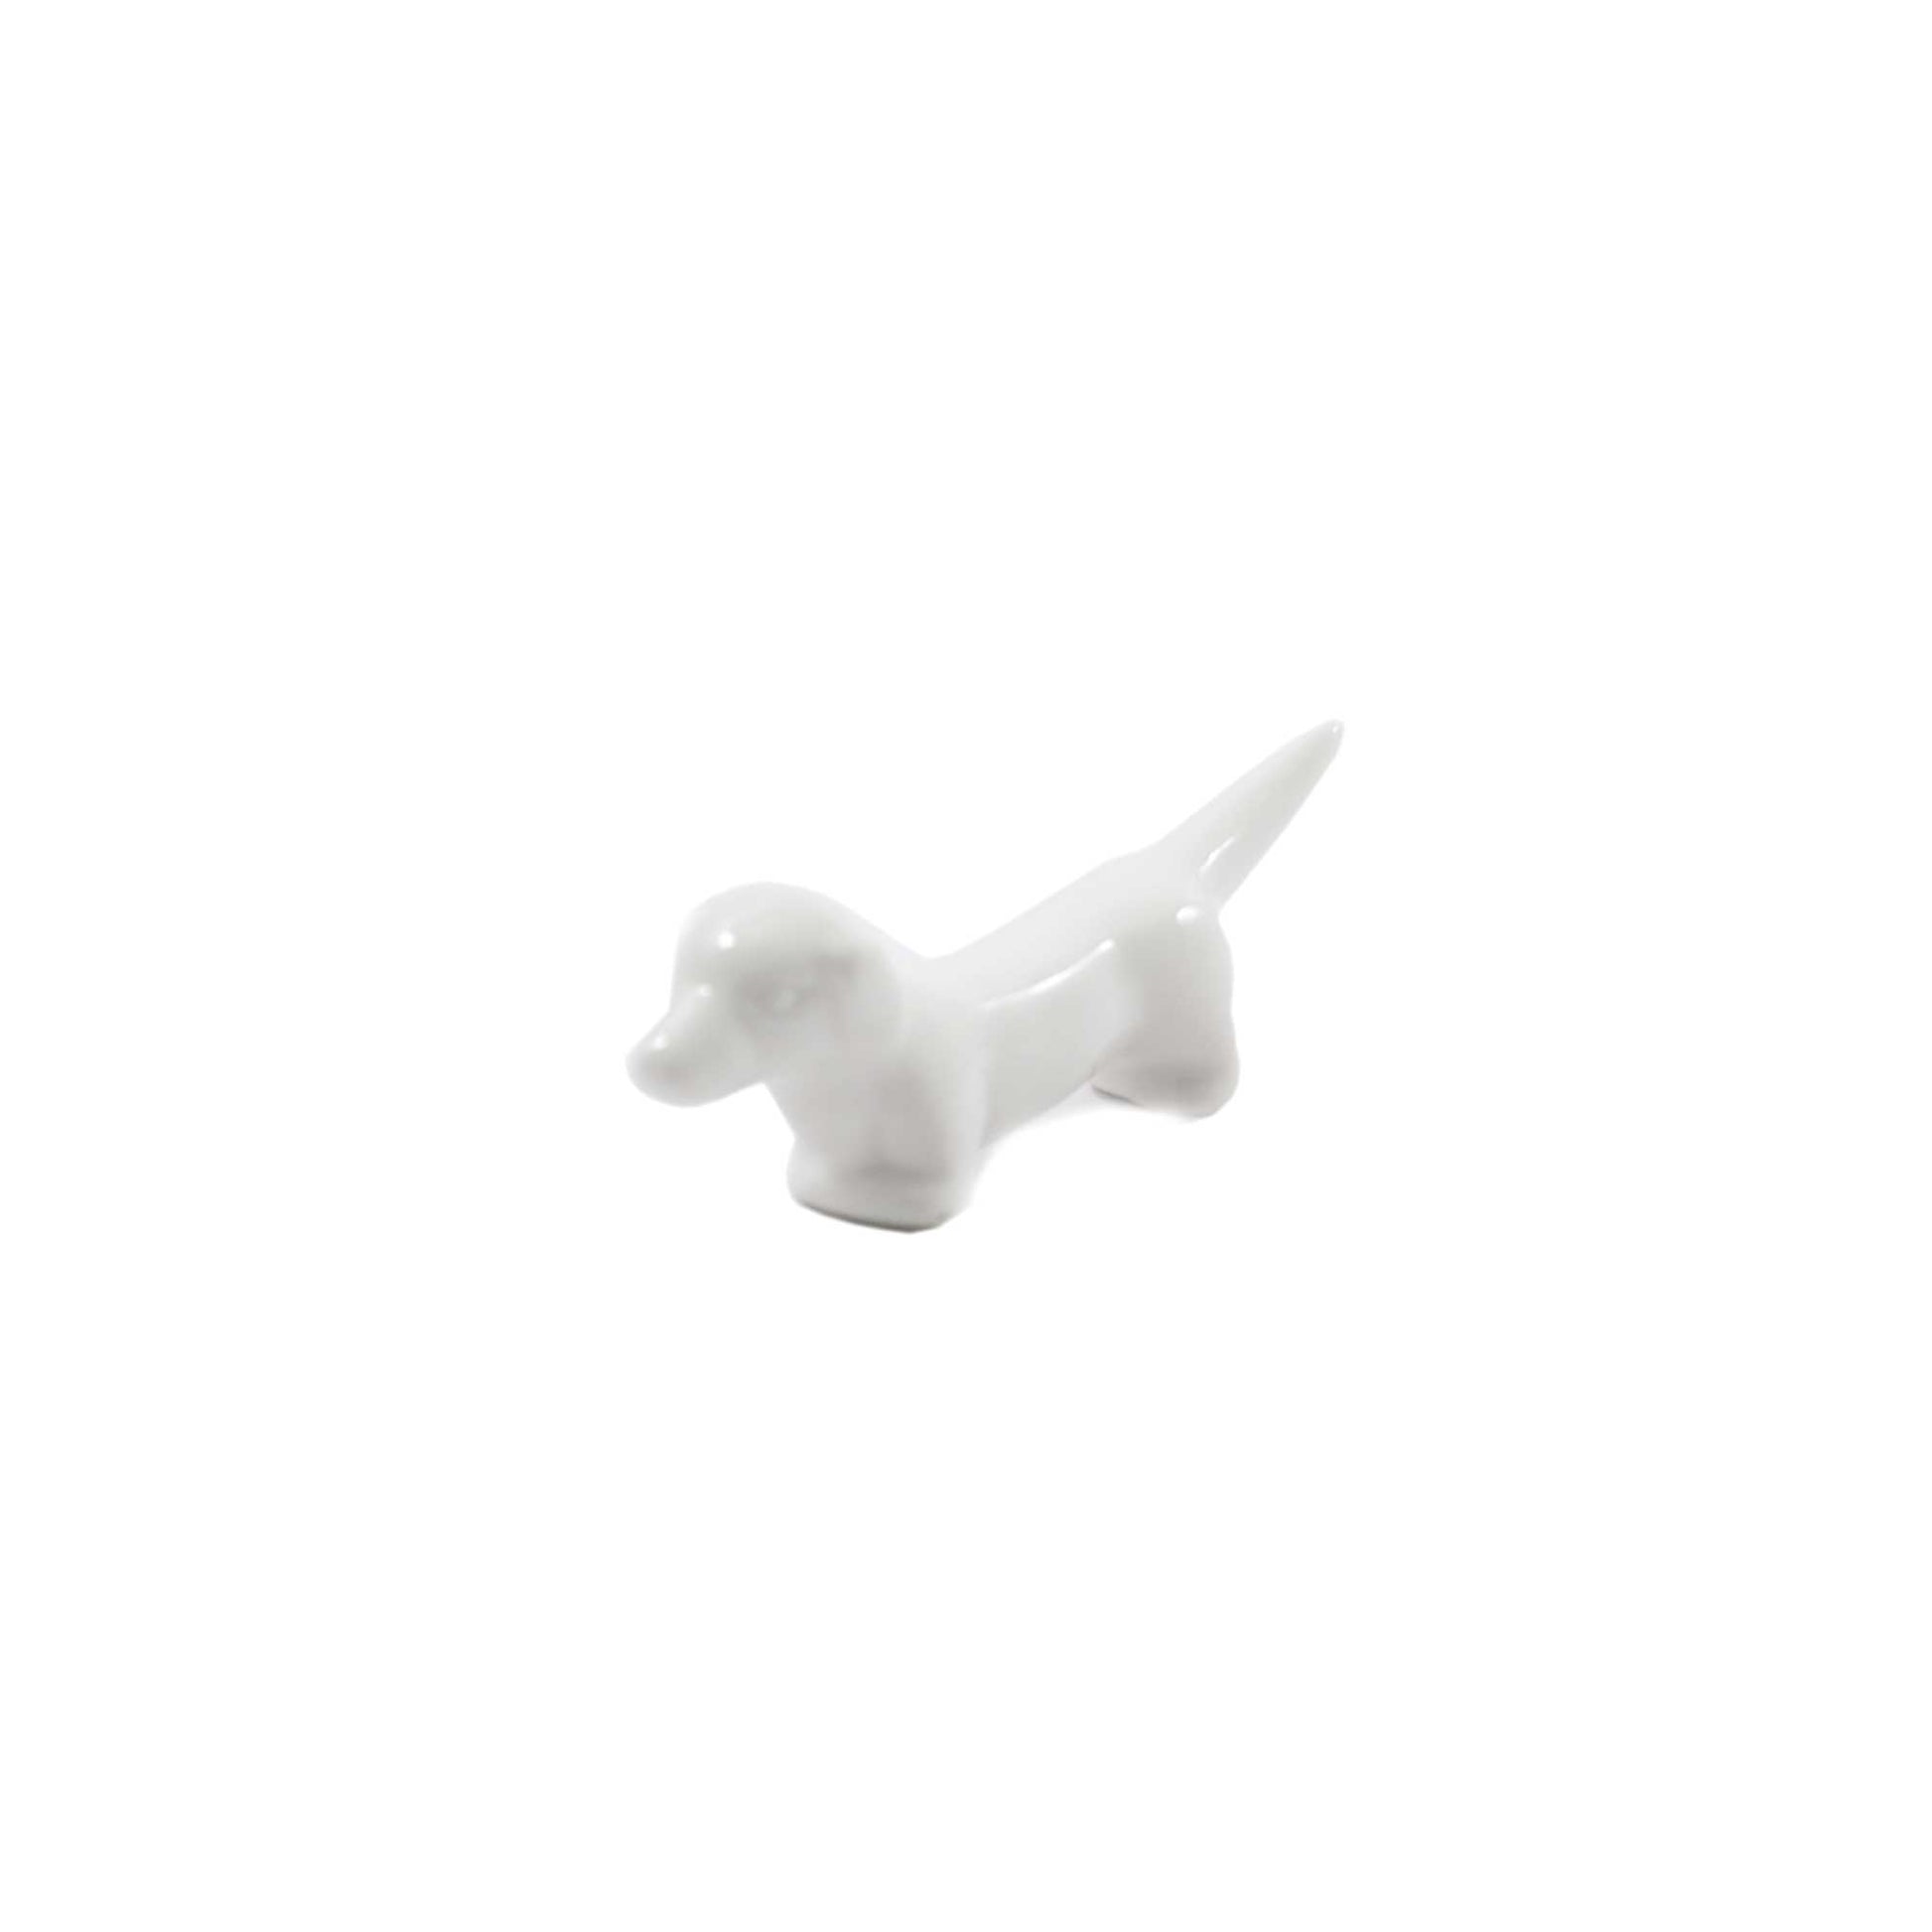 Set di 6 appoggia posate in porcellana bianca a forma di cagnolino (Bassotto). Dimensioni: cm 8 x 2 x 2,5 h. In negozio e online su tuttochic.it